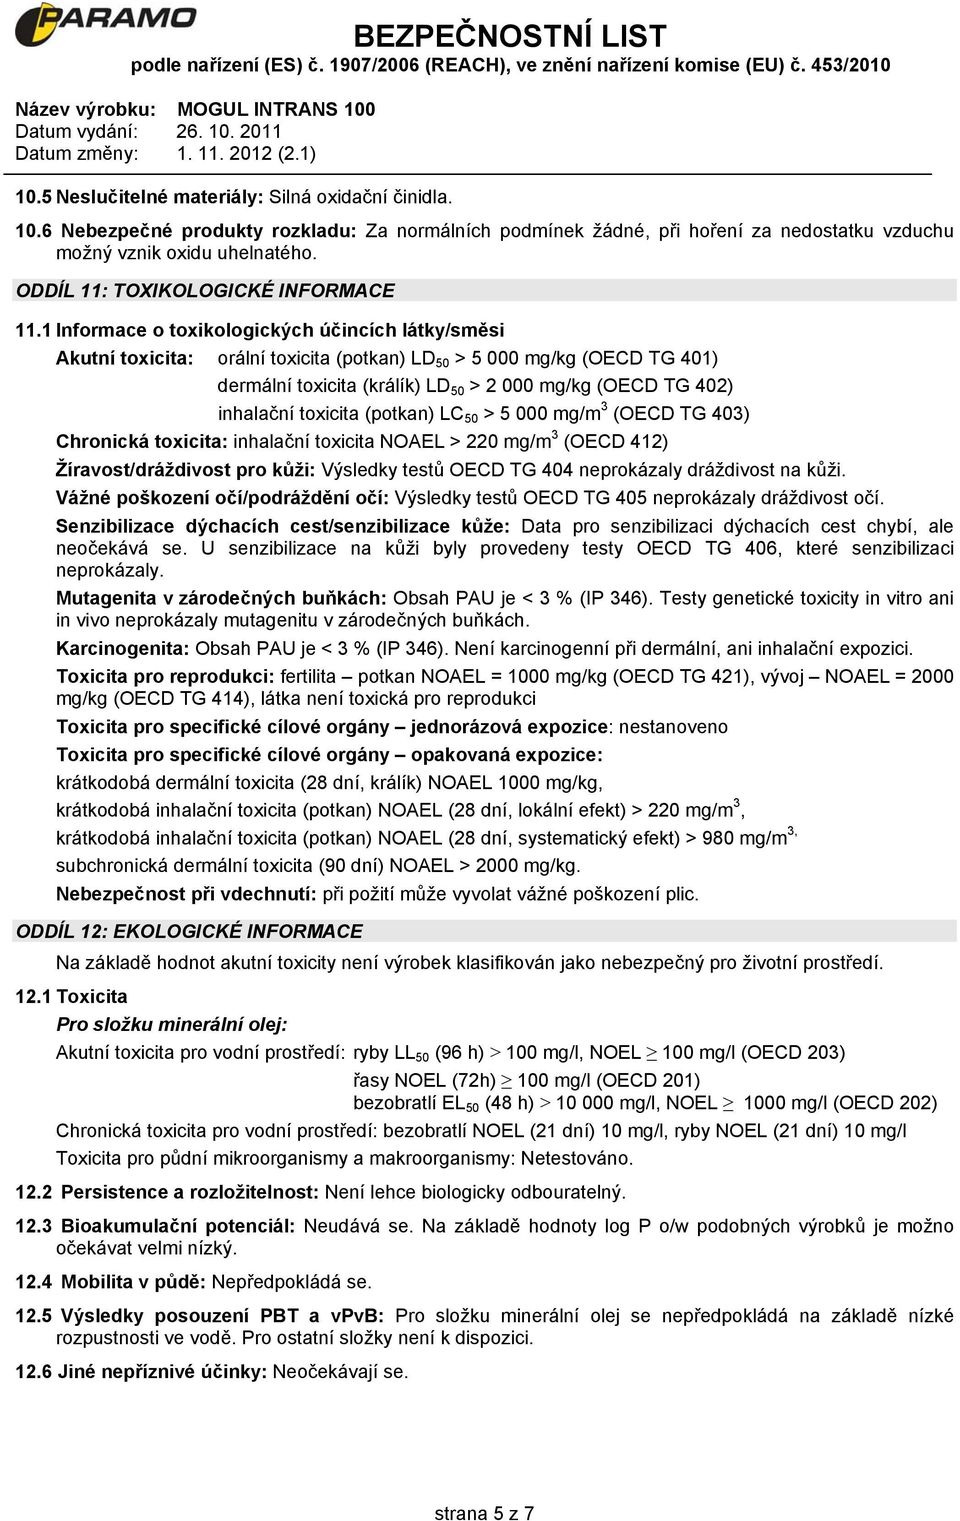 1 Informace o toxikologických účincích látky/směsi Akutní toxicita: orální toxicita (potkan) LD 50 > 5 000 mg/kg (OECD TG 401) dermální toxicita (králík) LD 50 > 2 000 mg/kg (OECD TG 402) inhalační